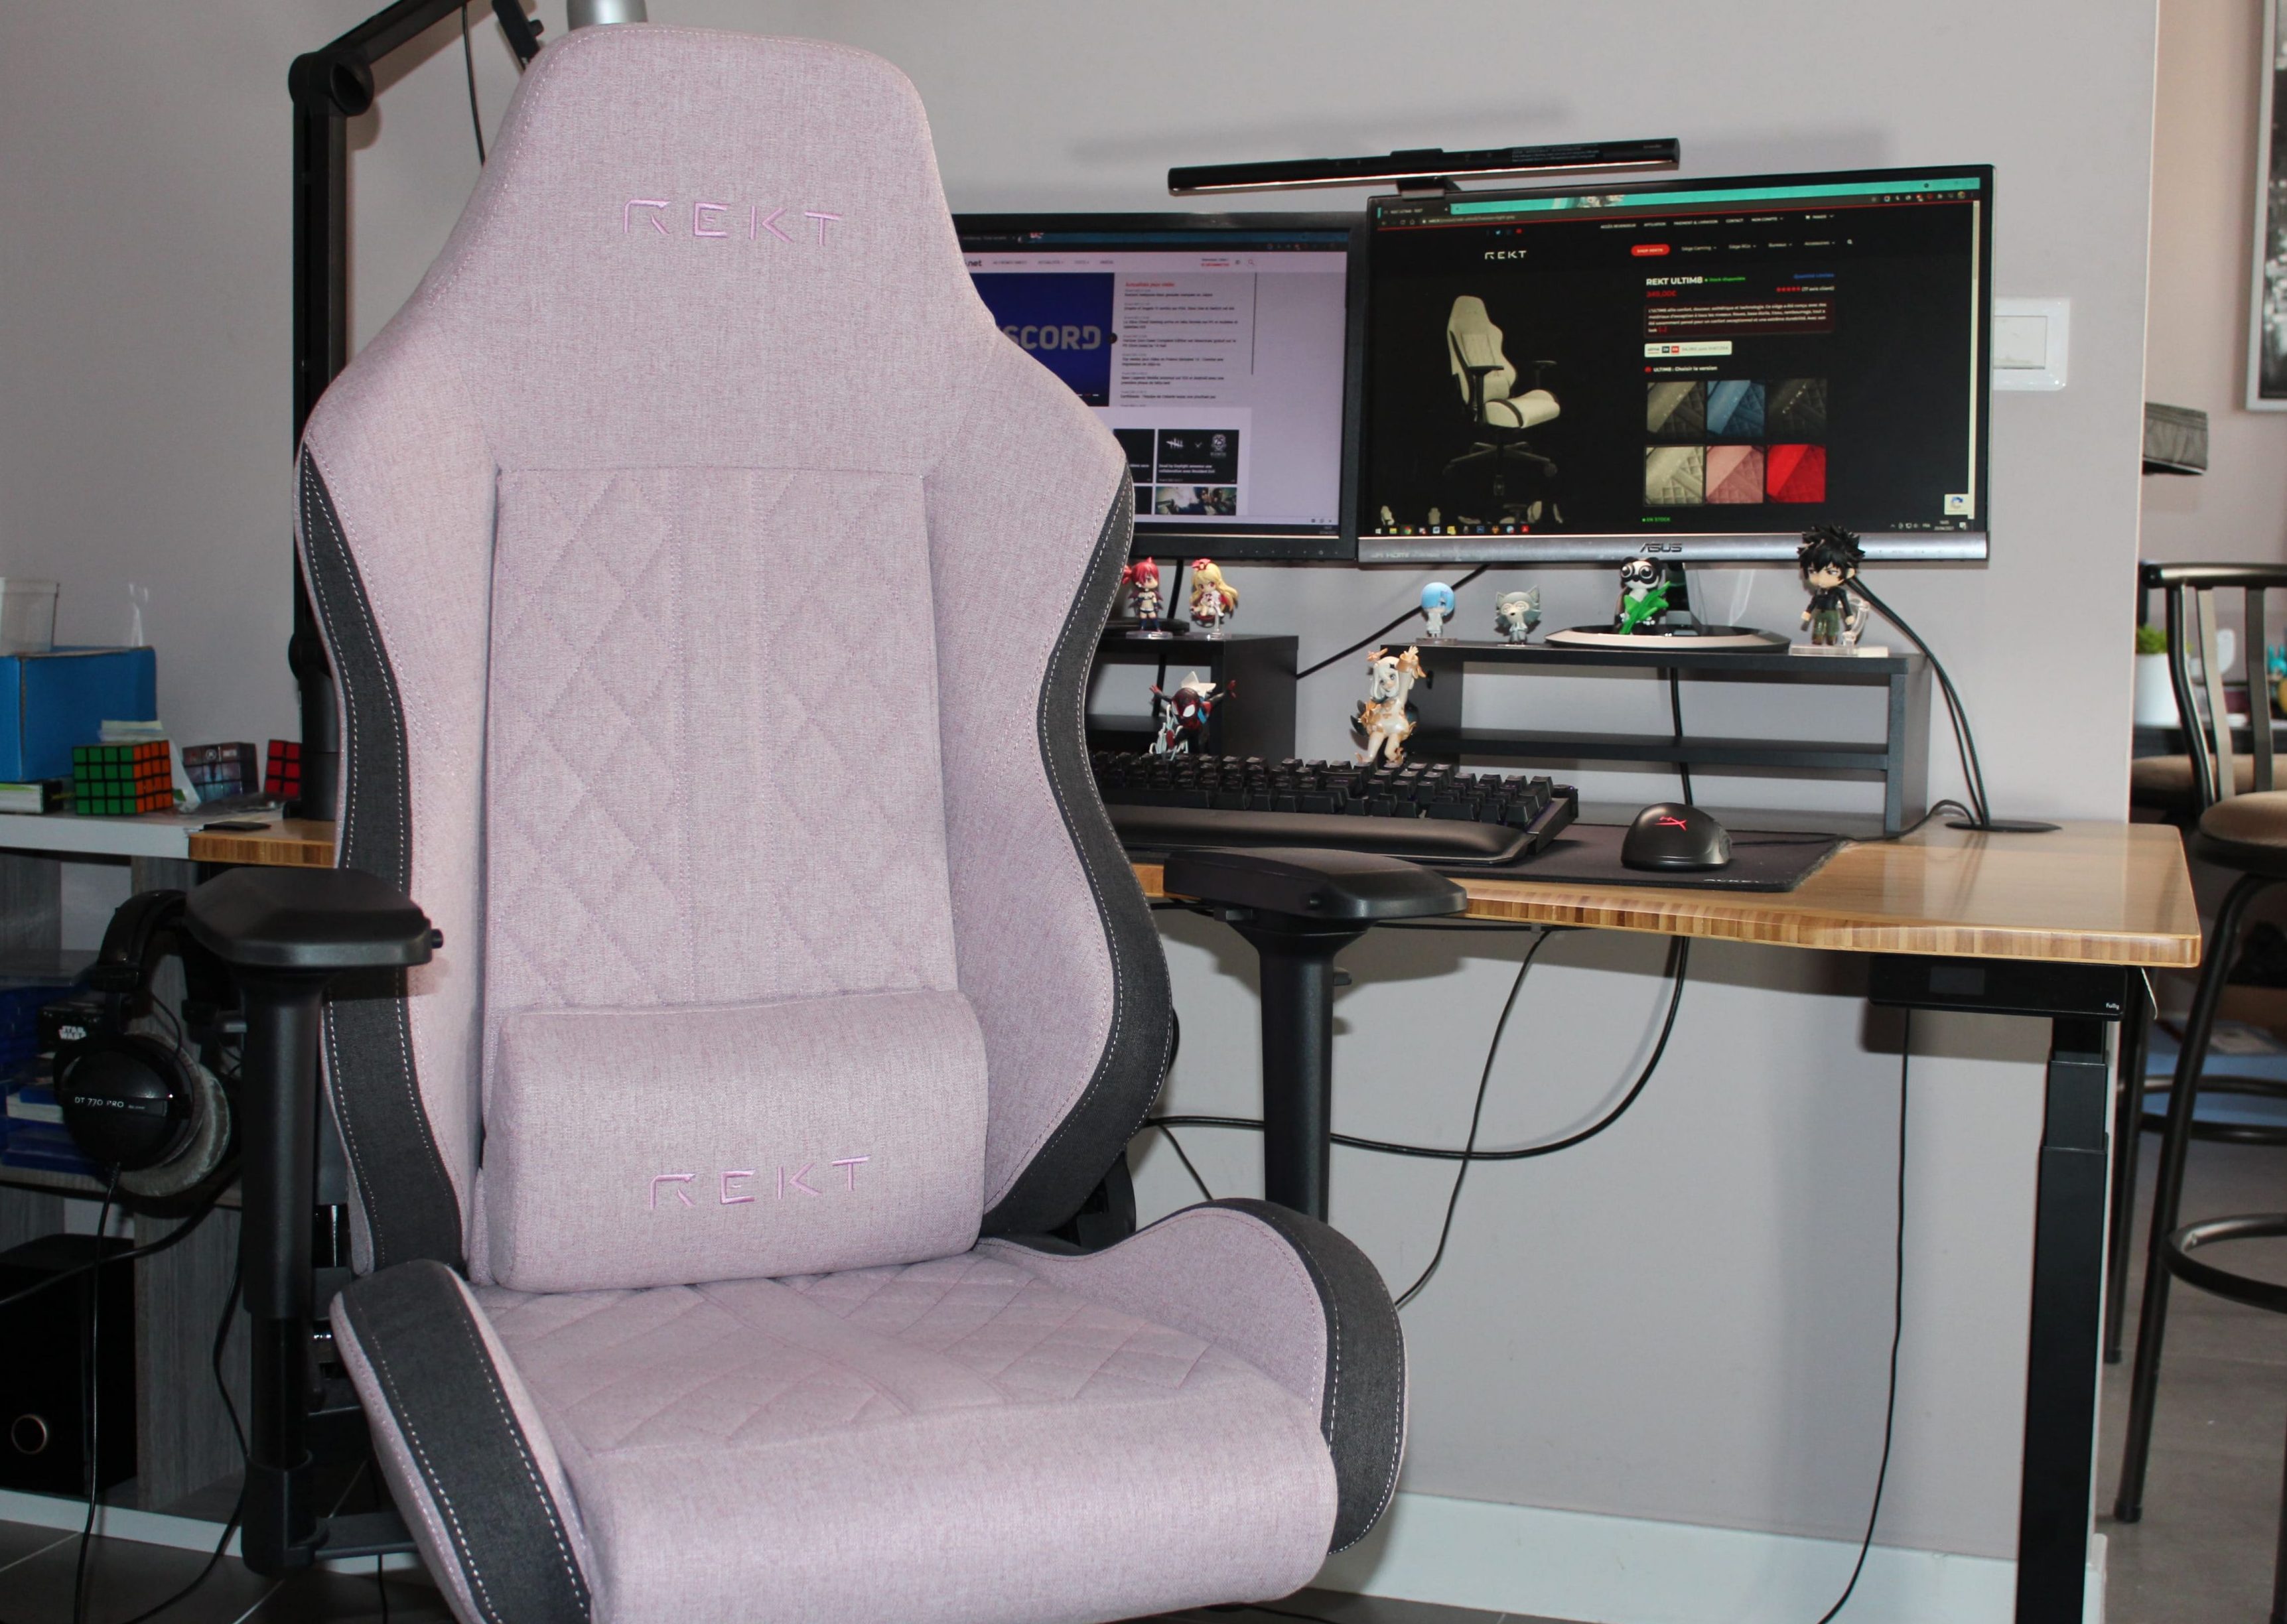 TEST du REKT Team8 Fluo : un siège gaming confortable mais perfectible 